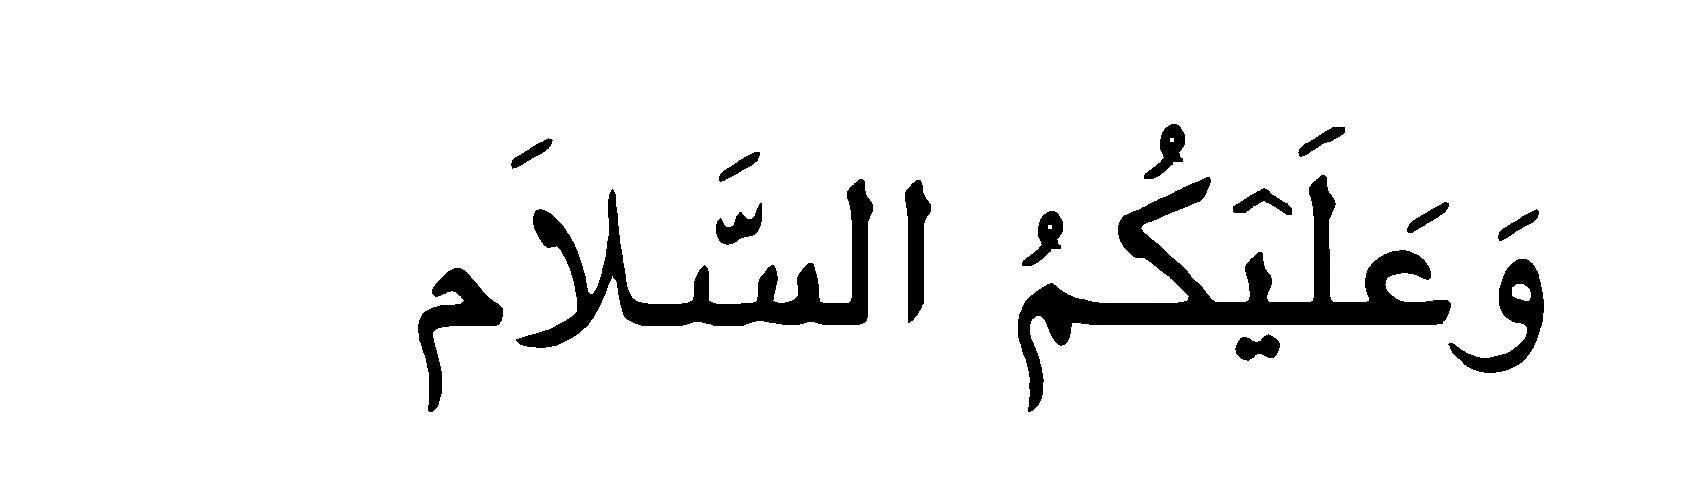 Салям на арабском. Салам алейкум на арабском. Приветствие на арабском языке. АС саляму алейкум на арабском языке.